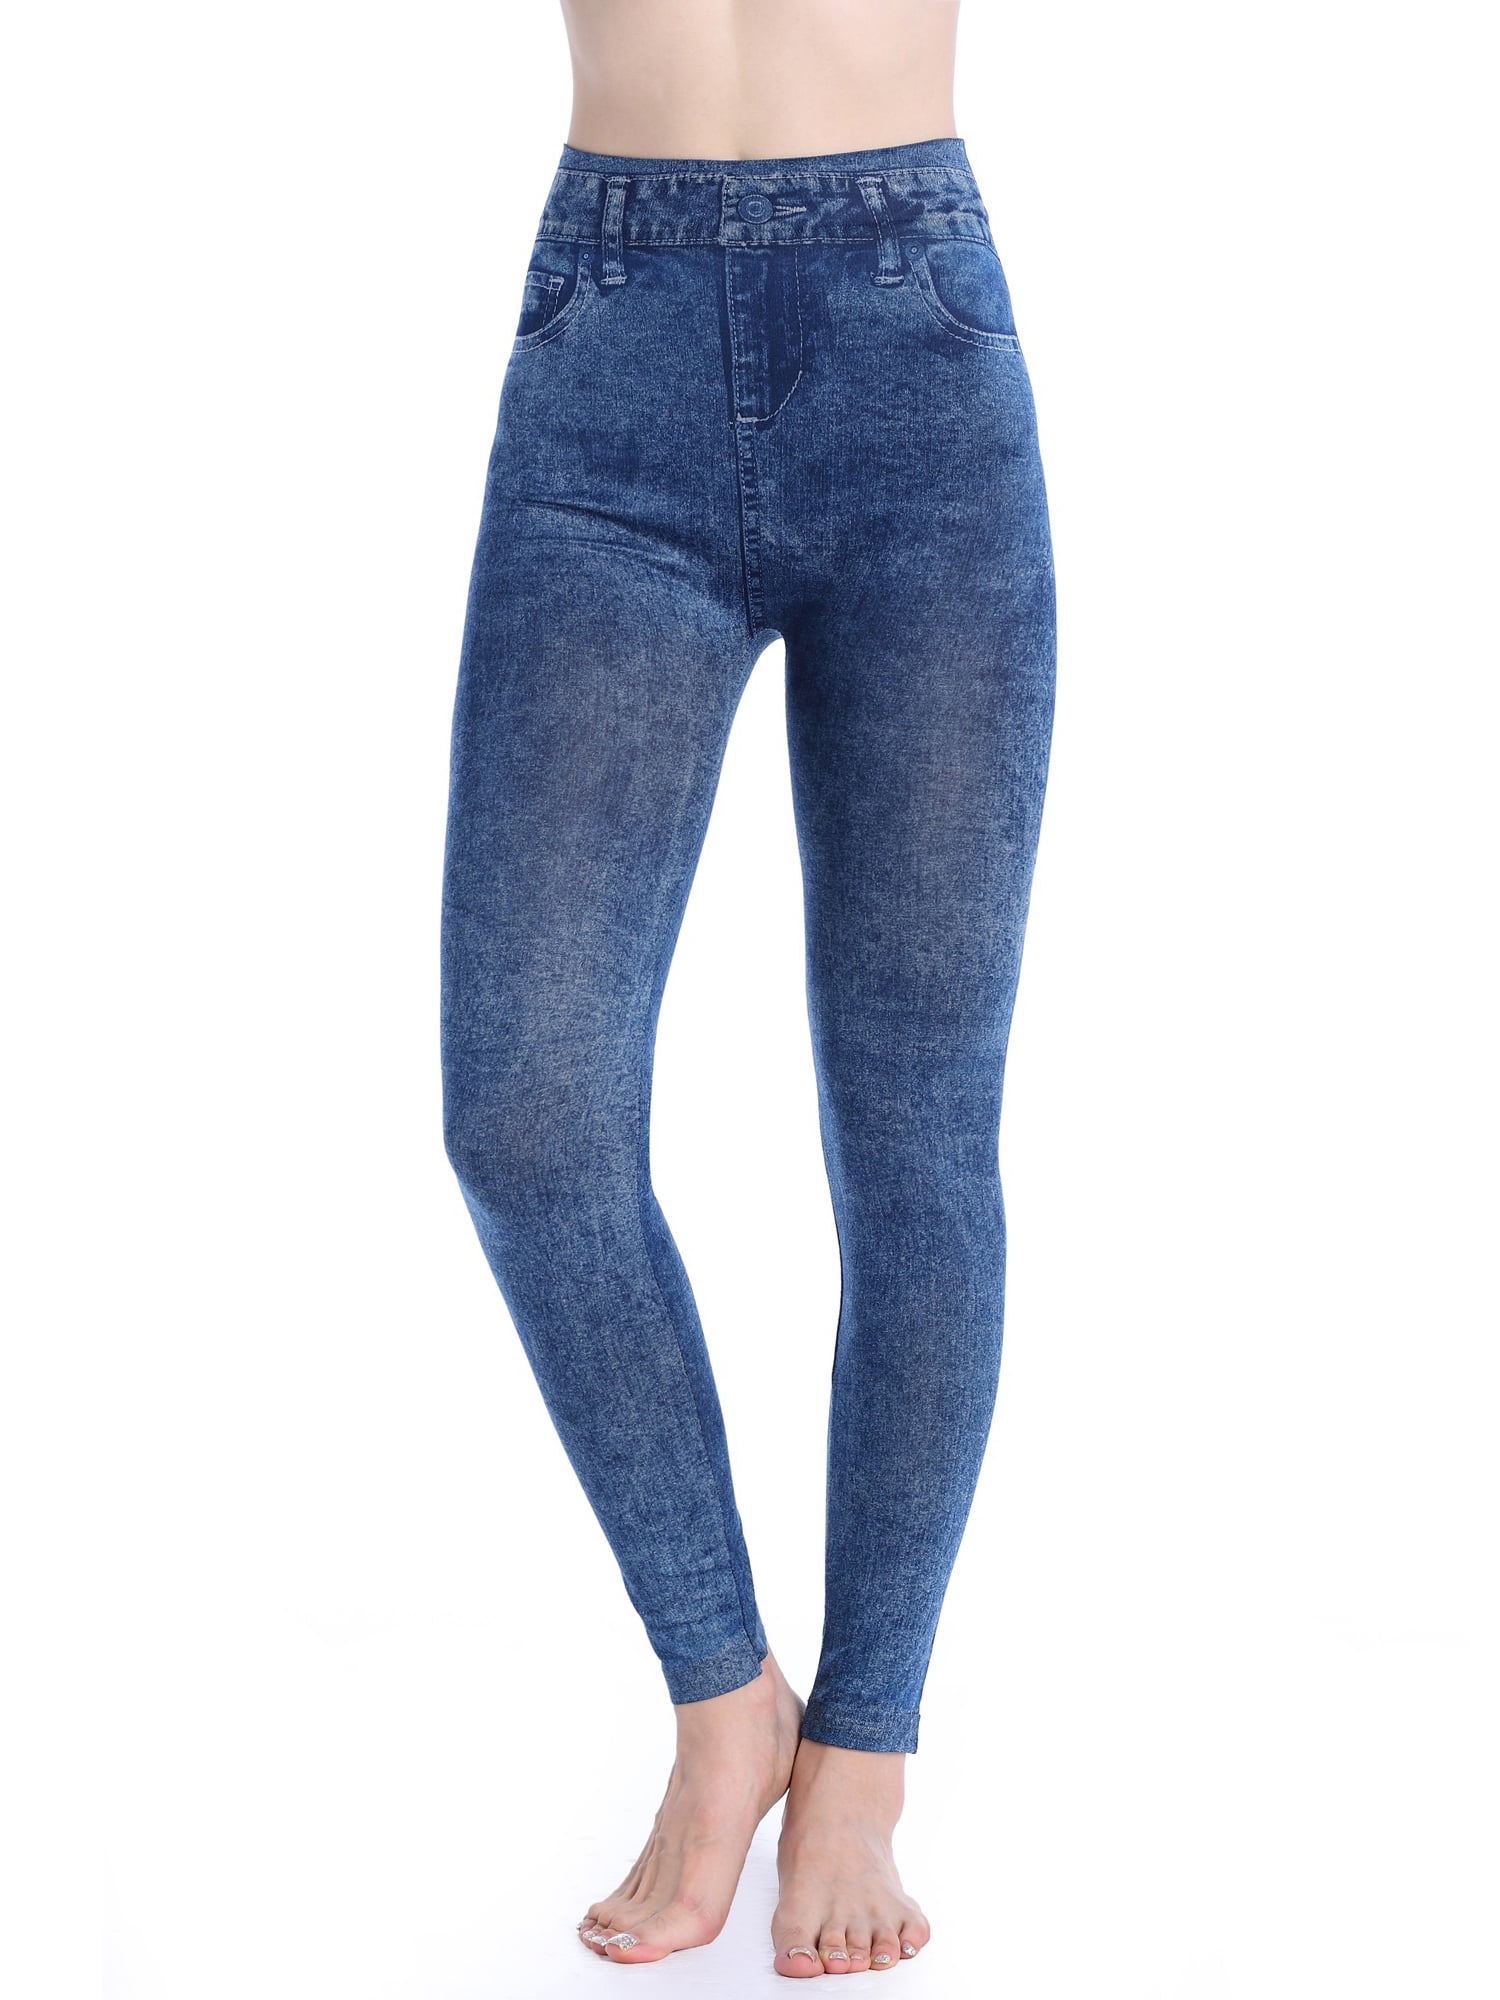 Womens Ladies Stretchy Denim Jeans Look Skinny Jeggings High Waist Leggings US